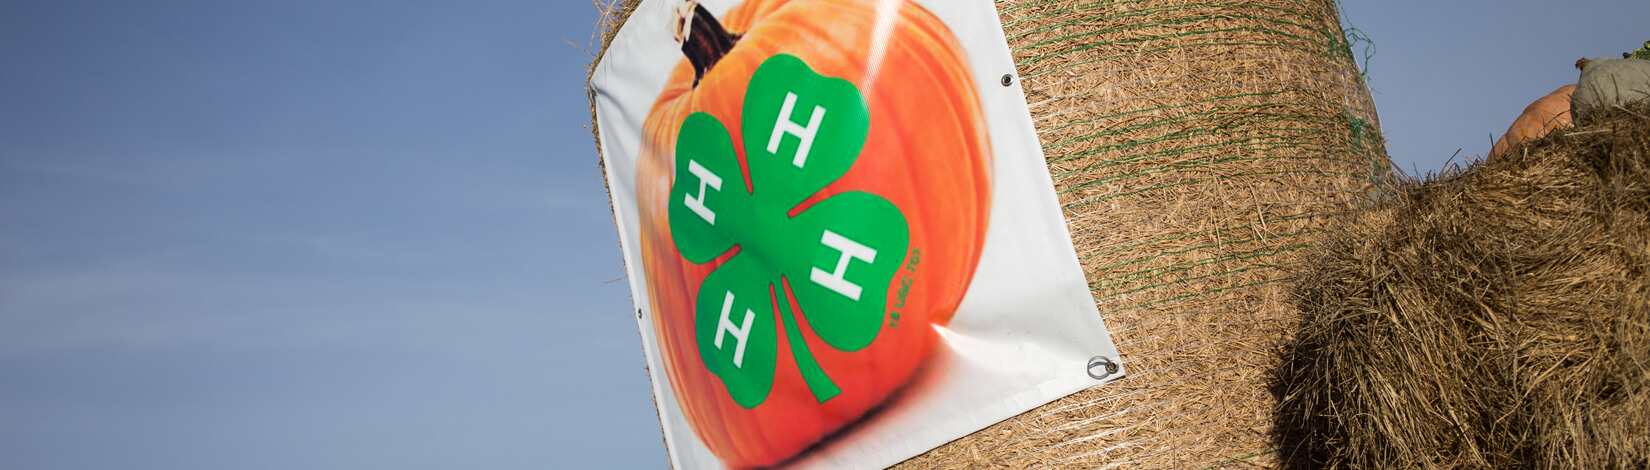 4-H logo on pumpkin